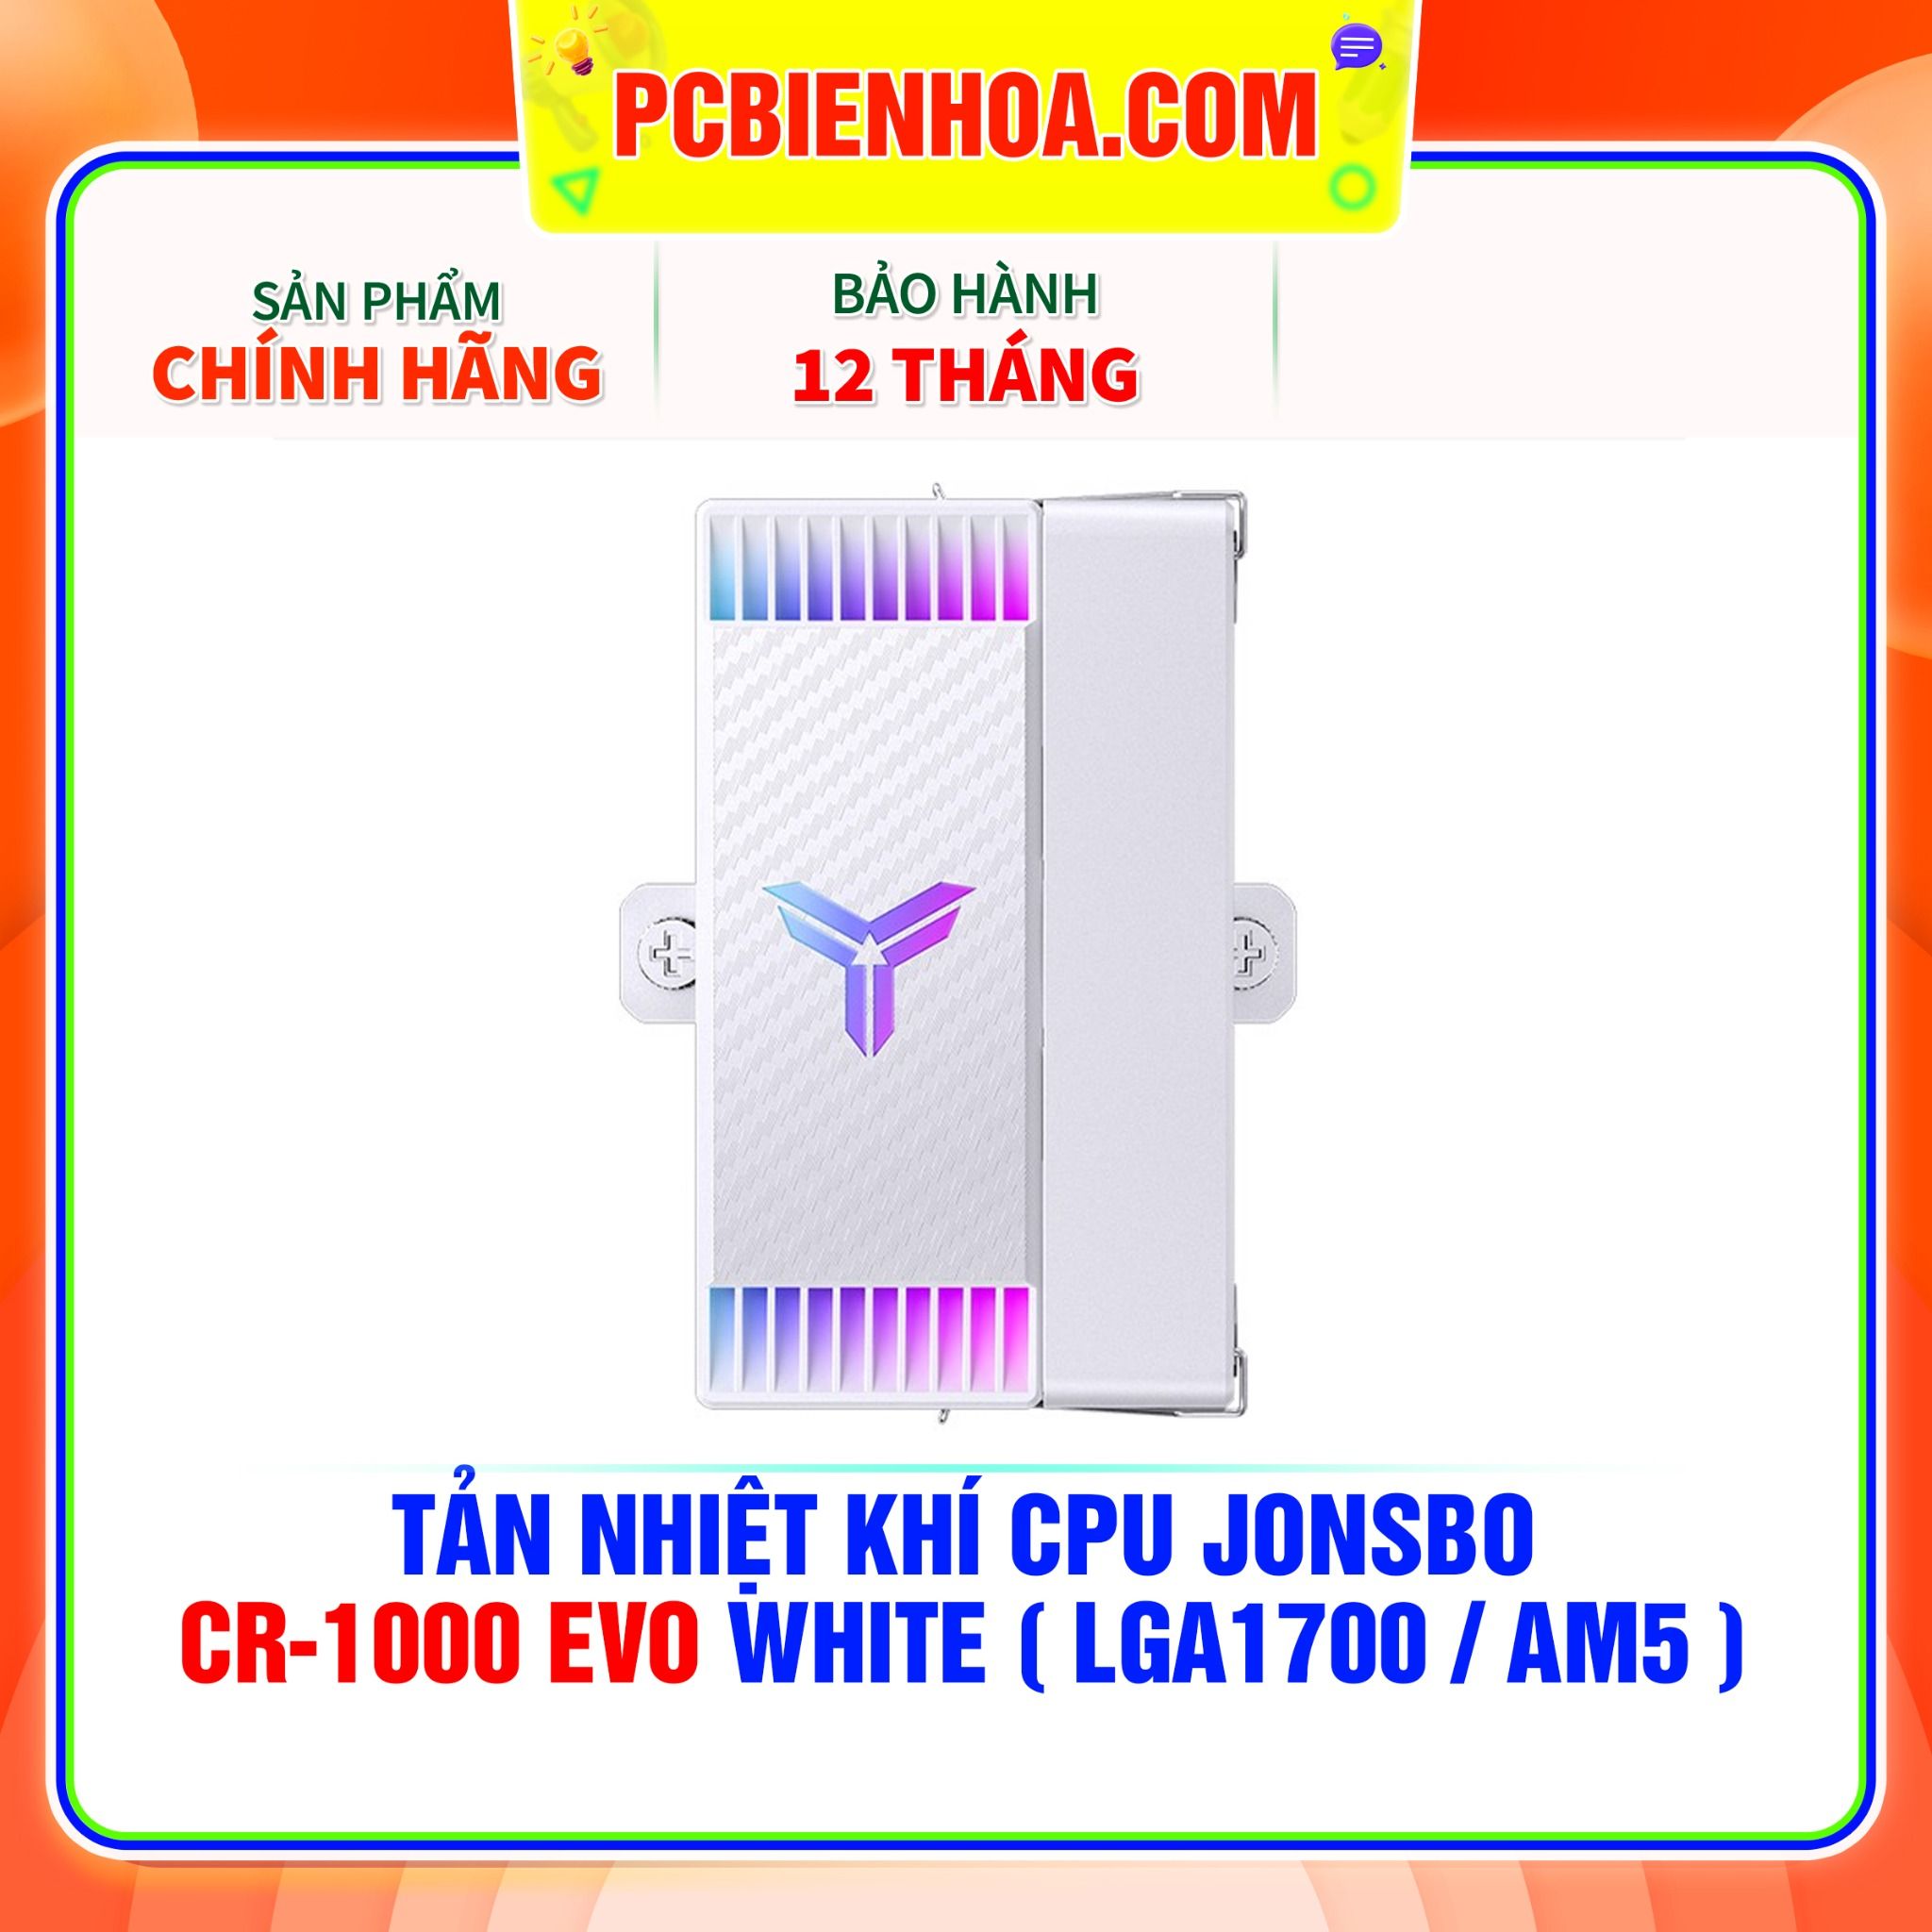  TẢN NHIỆT KHÍ CPU JONSBO CR-1000 EVO WHITE ( HỖ TRỢ SOCKET LGA1700 / AM5 ) 